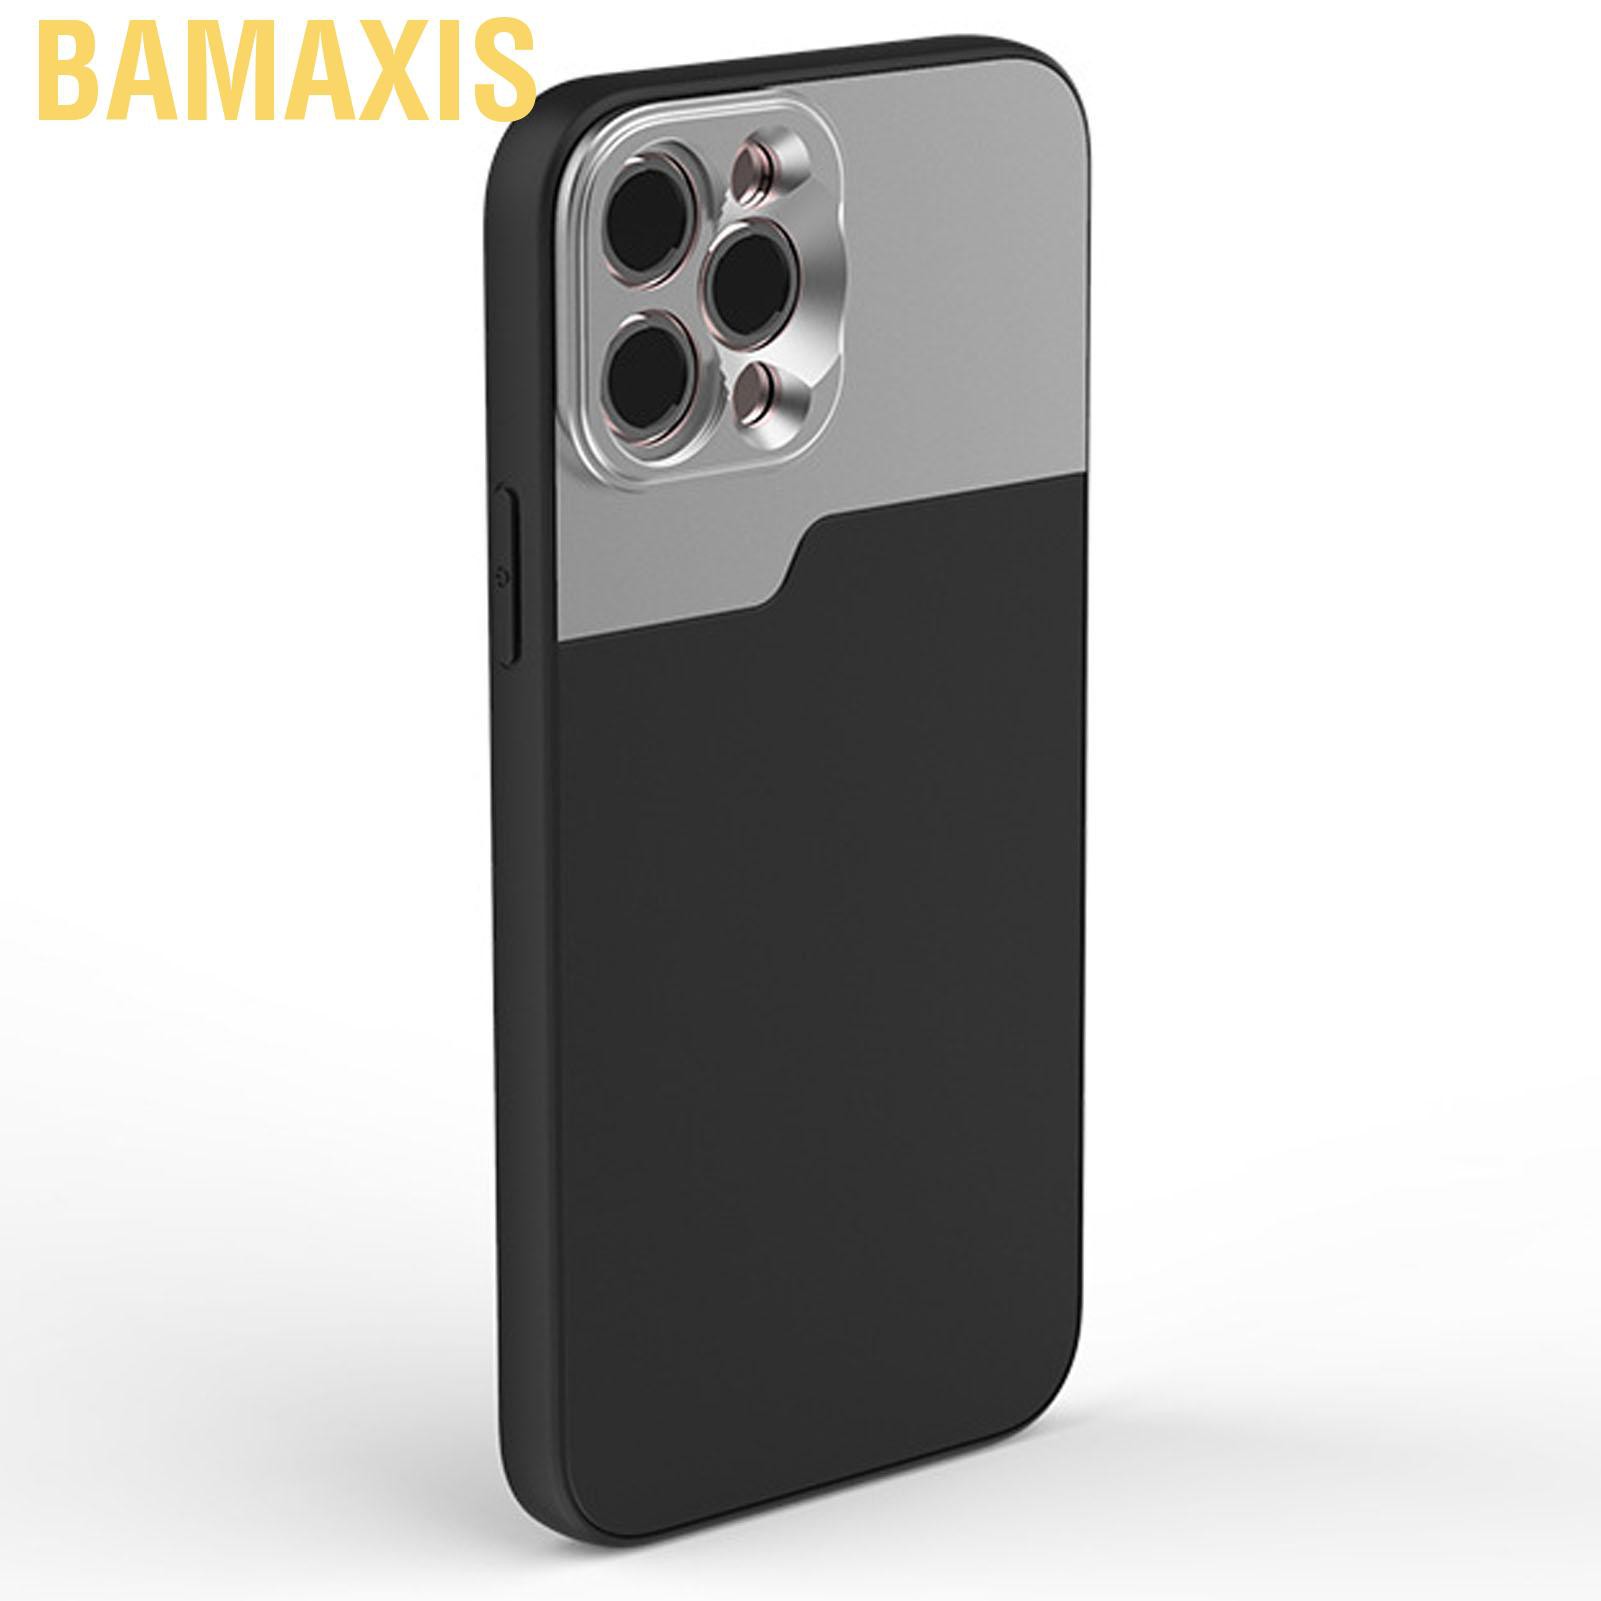 Ống Kính Bamaxis Chống Trầy 17mm Cho Iphone Samsung Camera